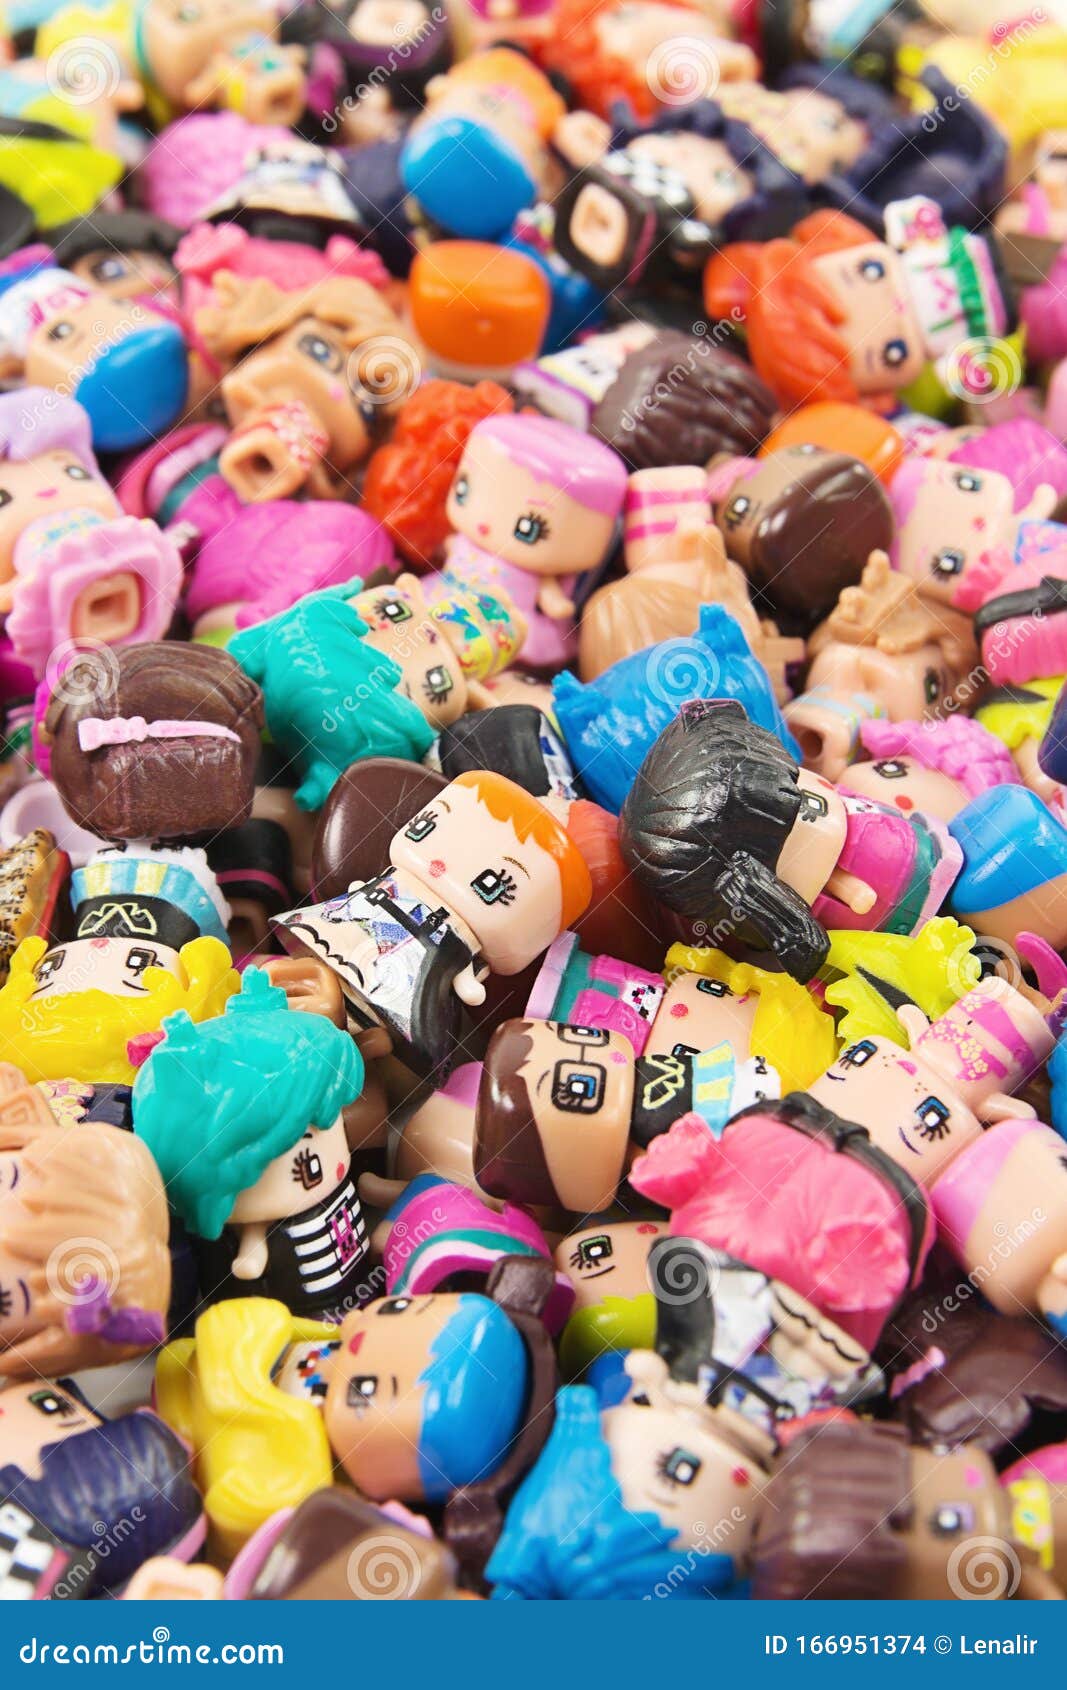 mini plastic dolls